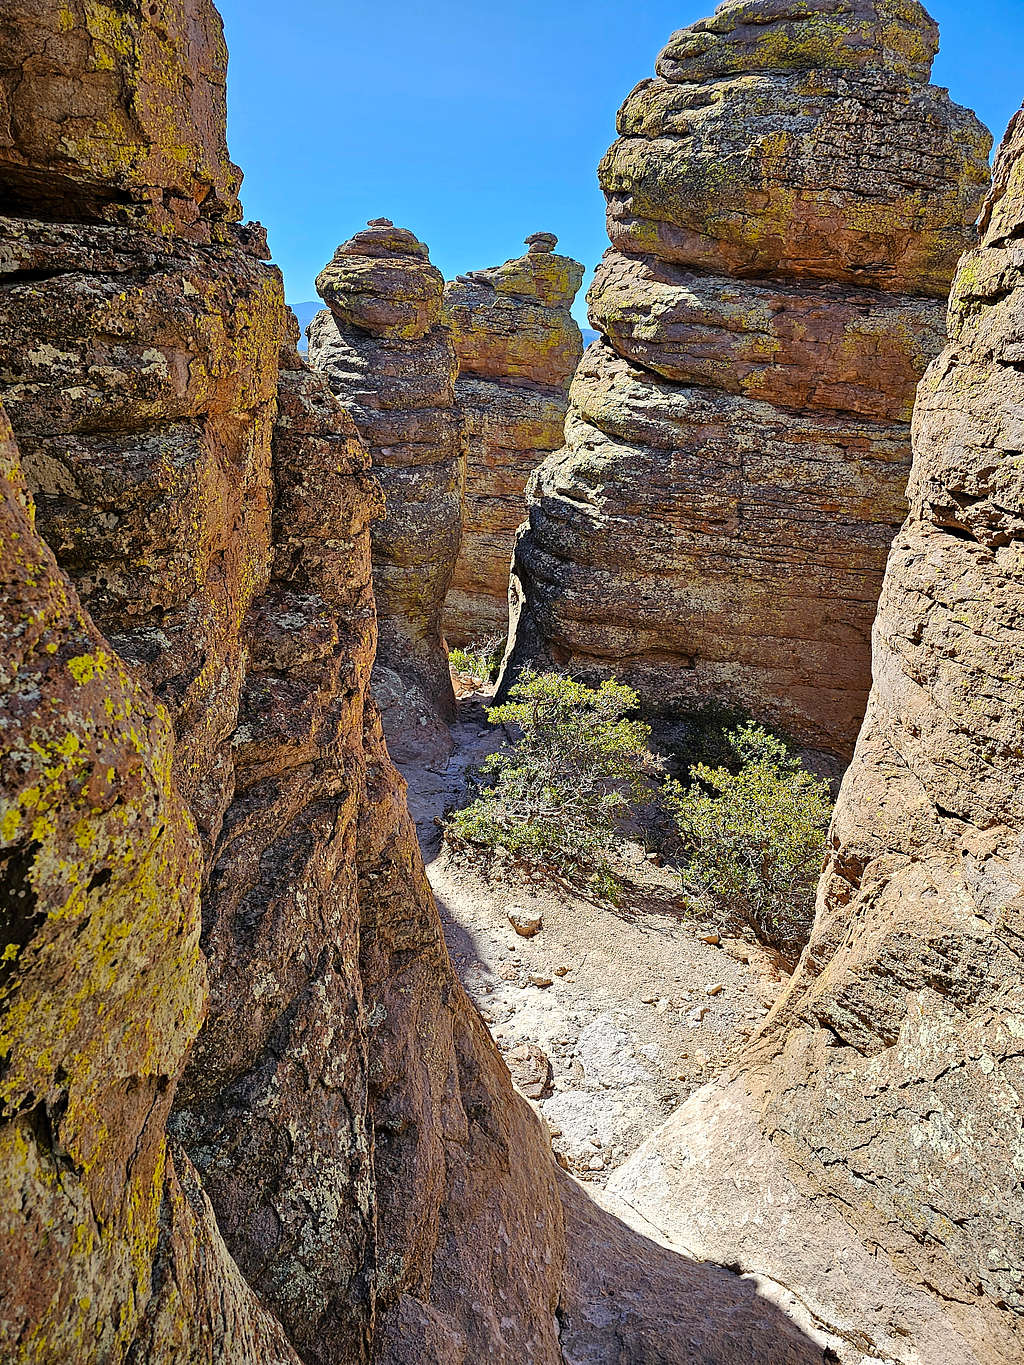 Heart of Rocks Trail